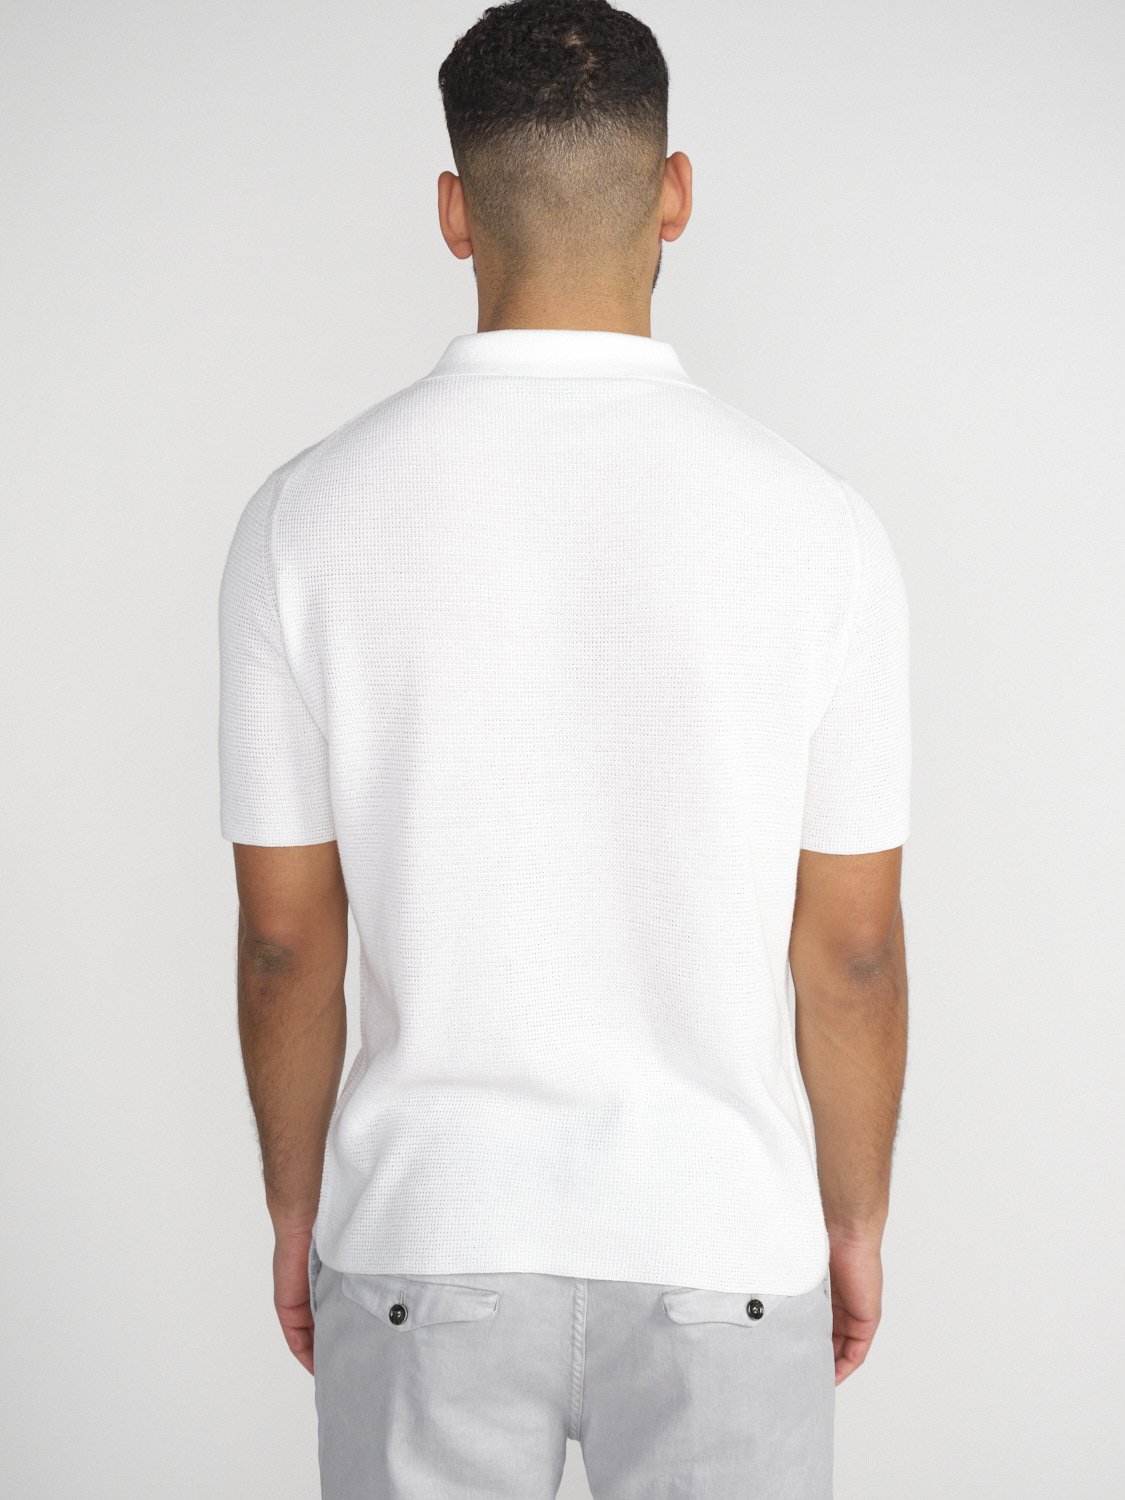 Iris von Arnim Pasqual – cotton polo shirt  white XL